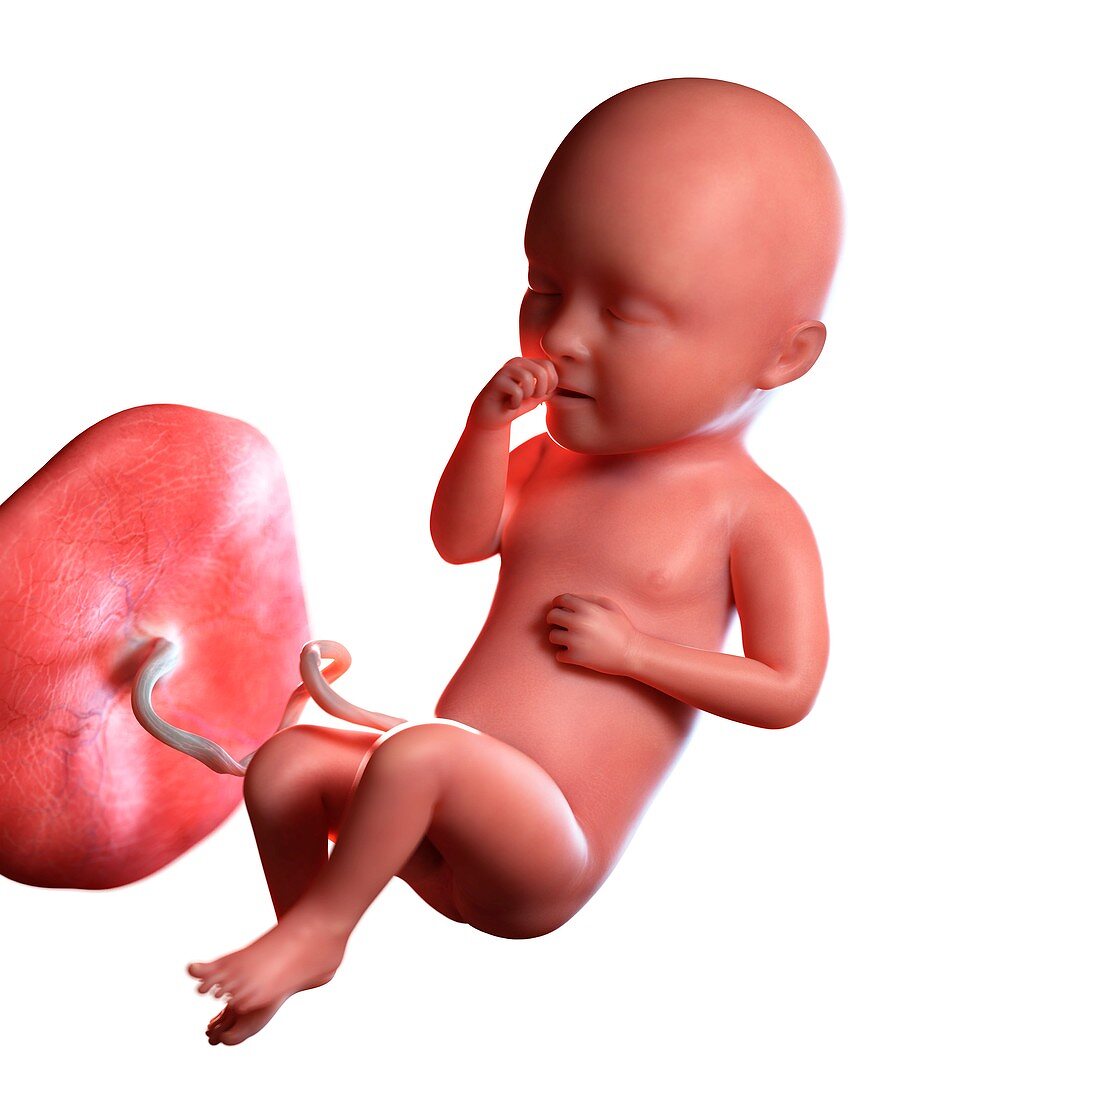 Human foetus age 34 weeks, illustration